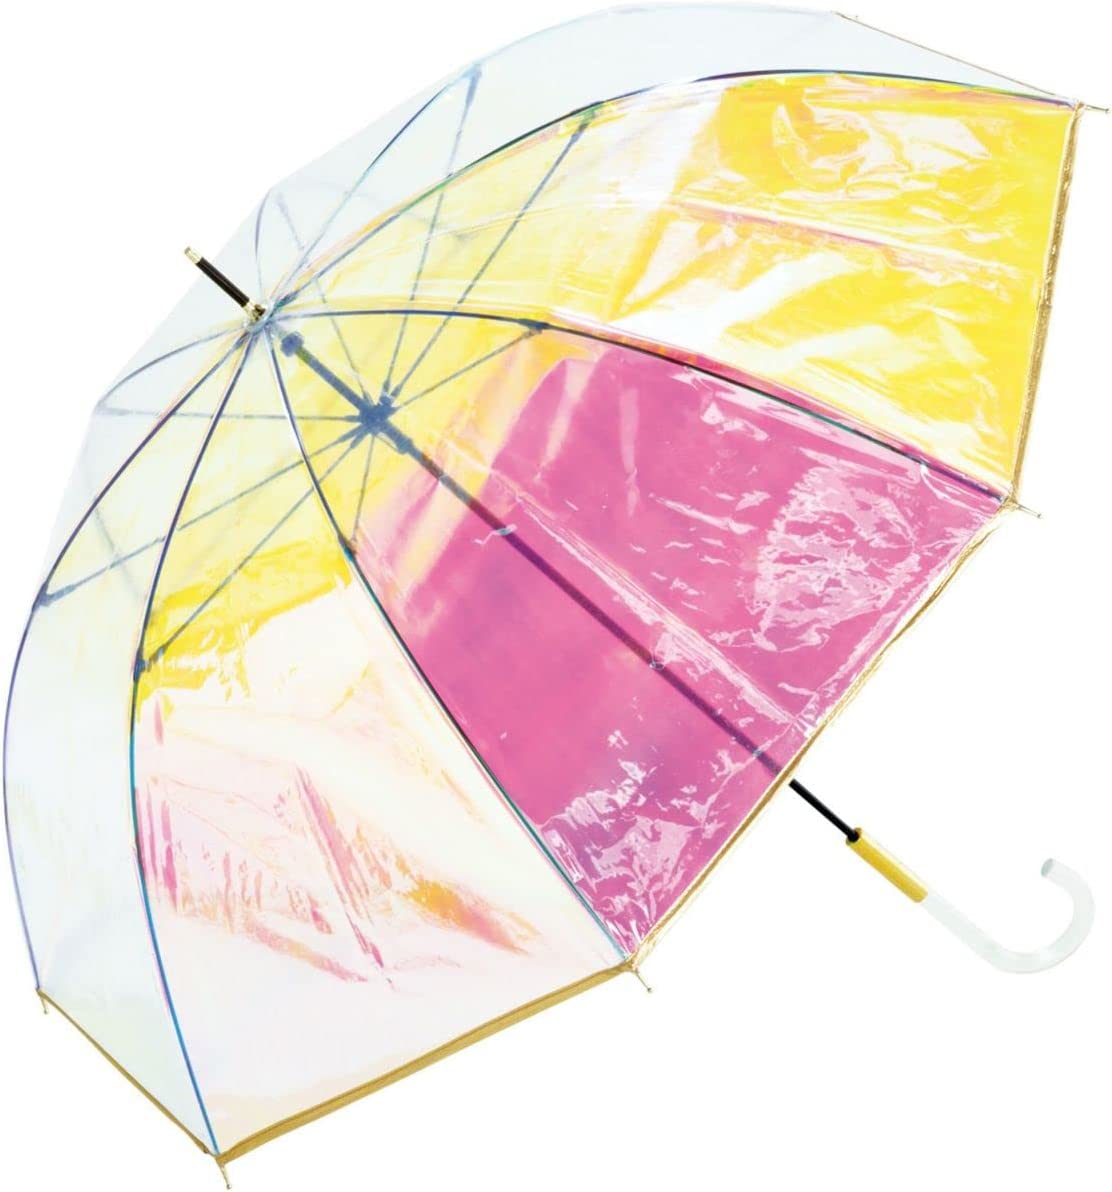 Wpc. ビニール傘 パイピング シャイニーアンブレラ shiny plastic umbrella 60cm ゴールド 長傘 レディ..